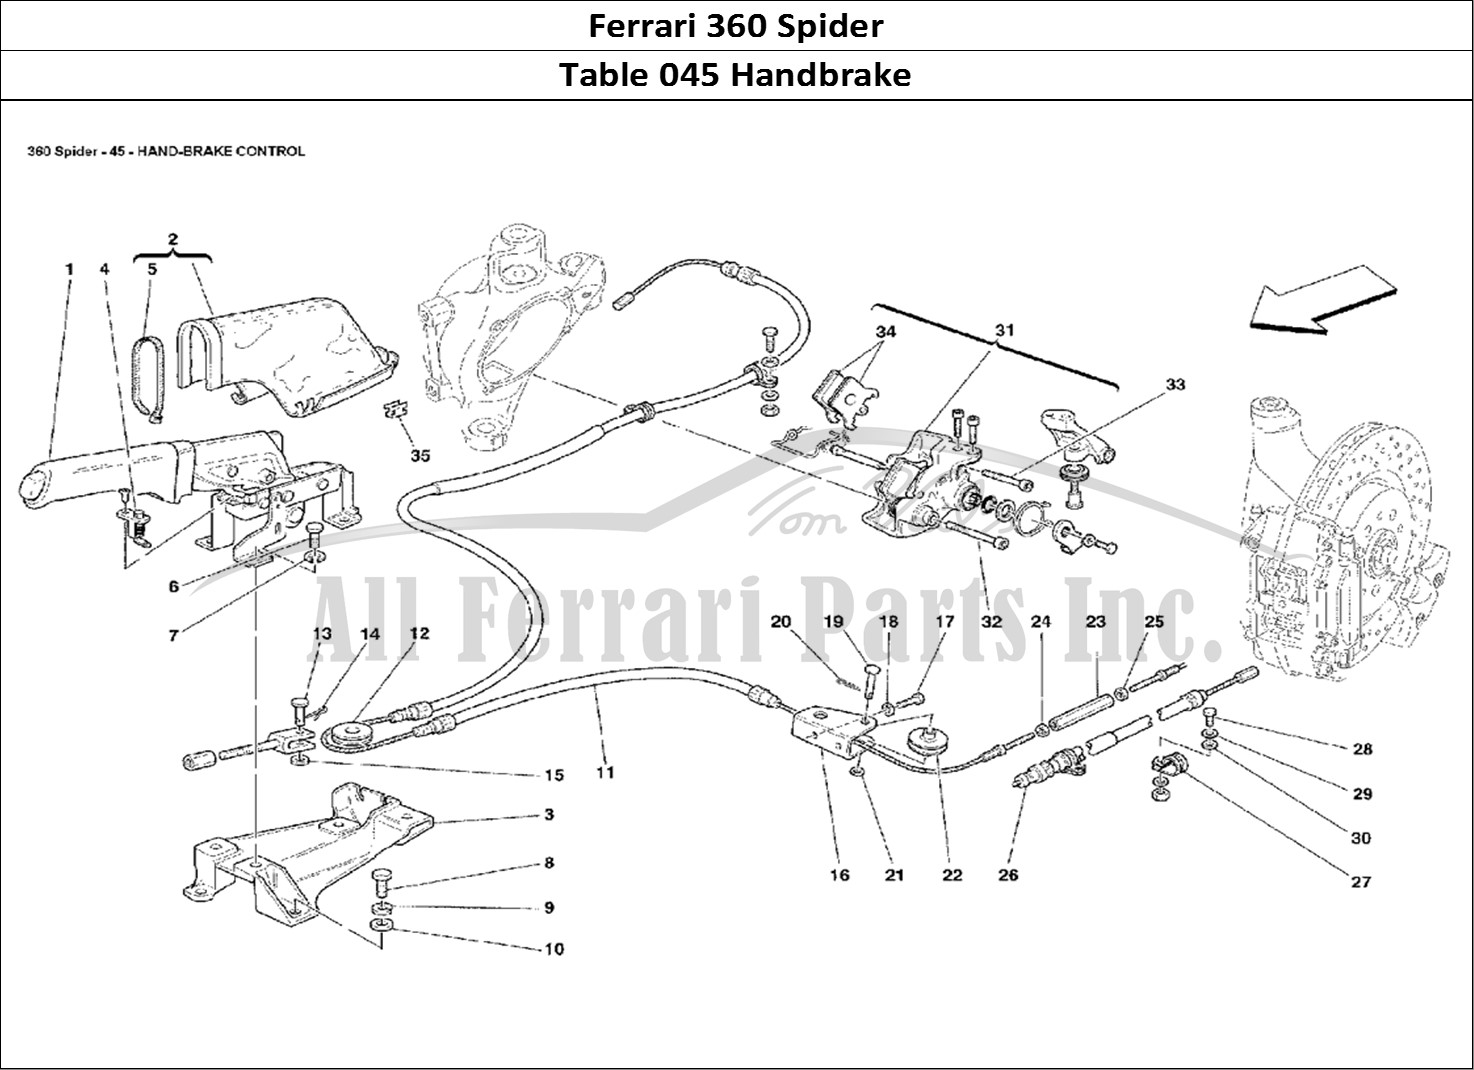 Ferrari Parts Ferrari 360 Spider Page 045 Hand-Brake Control